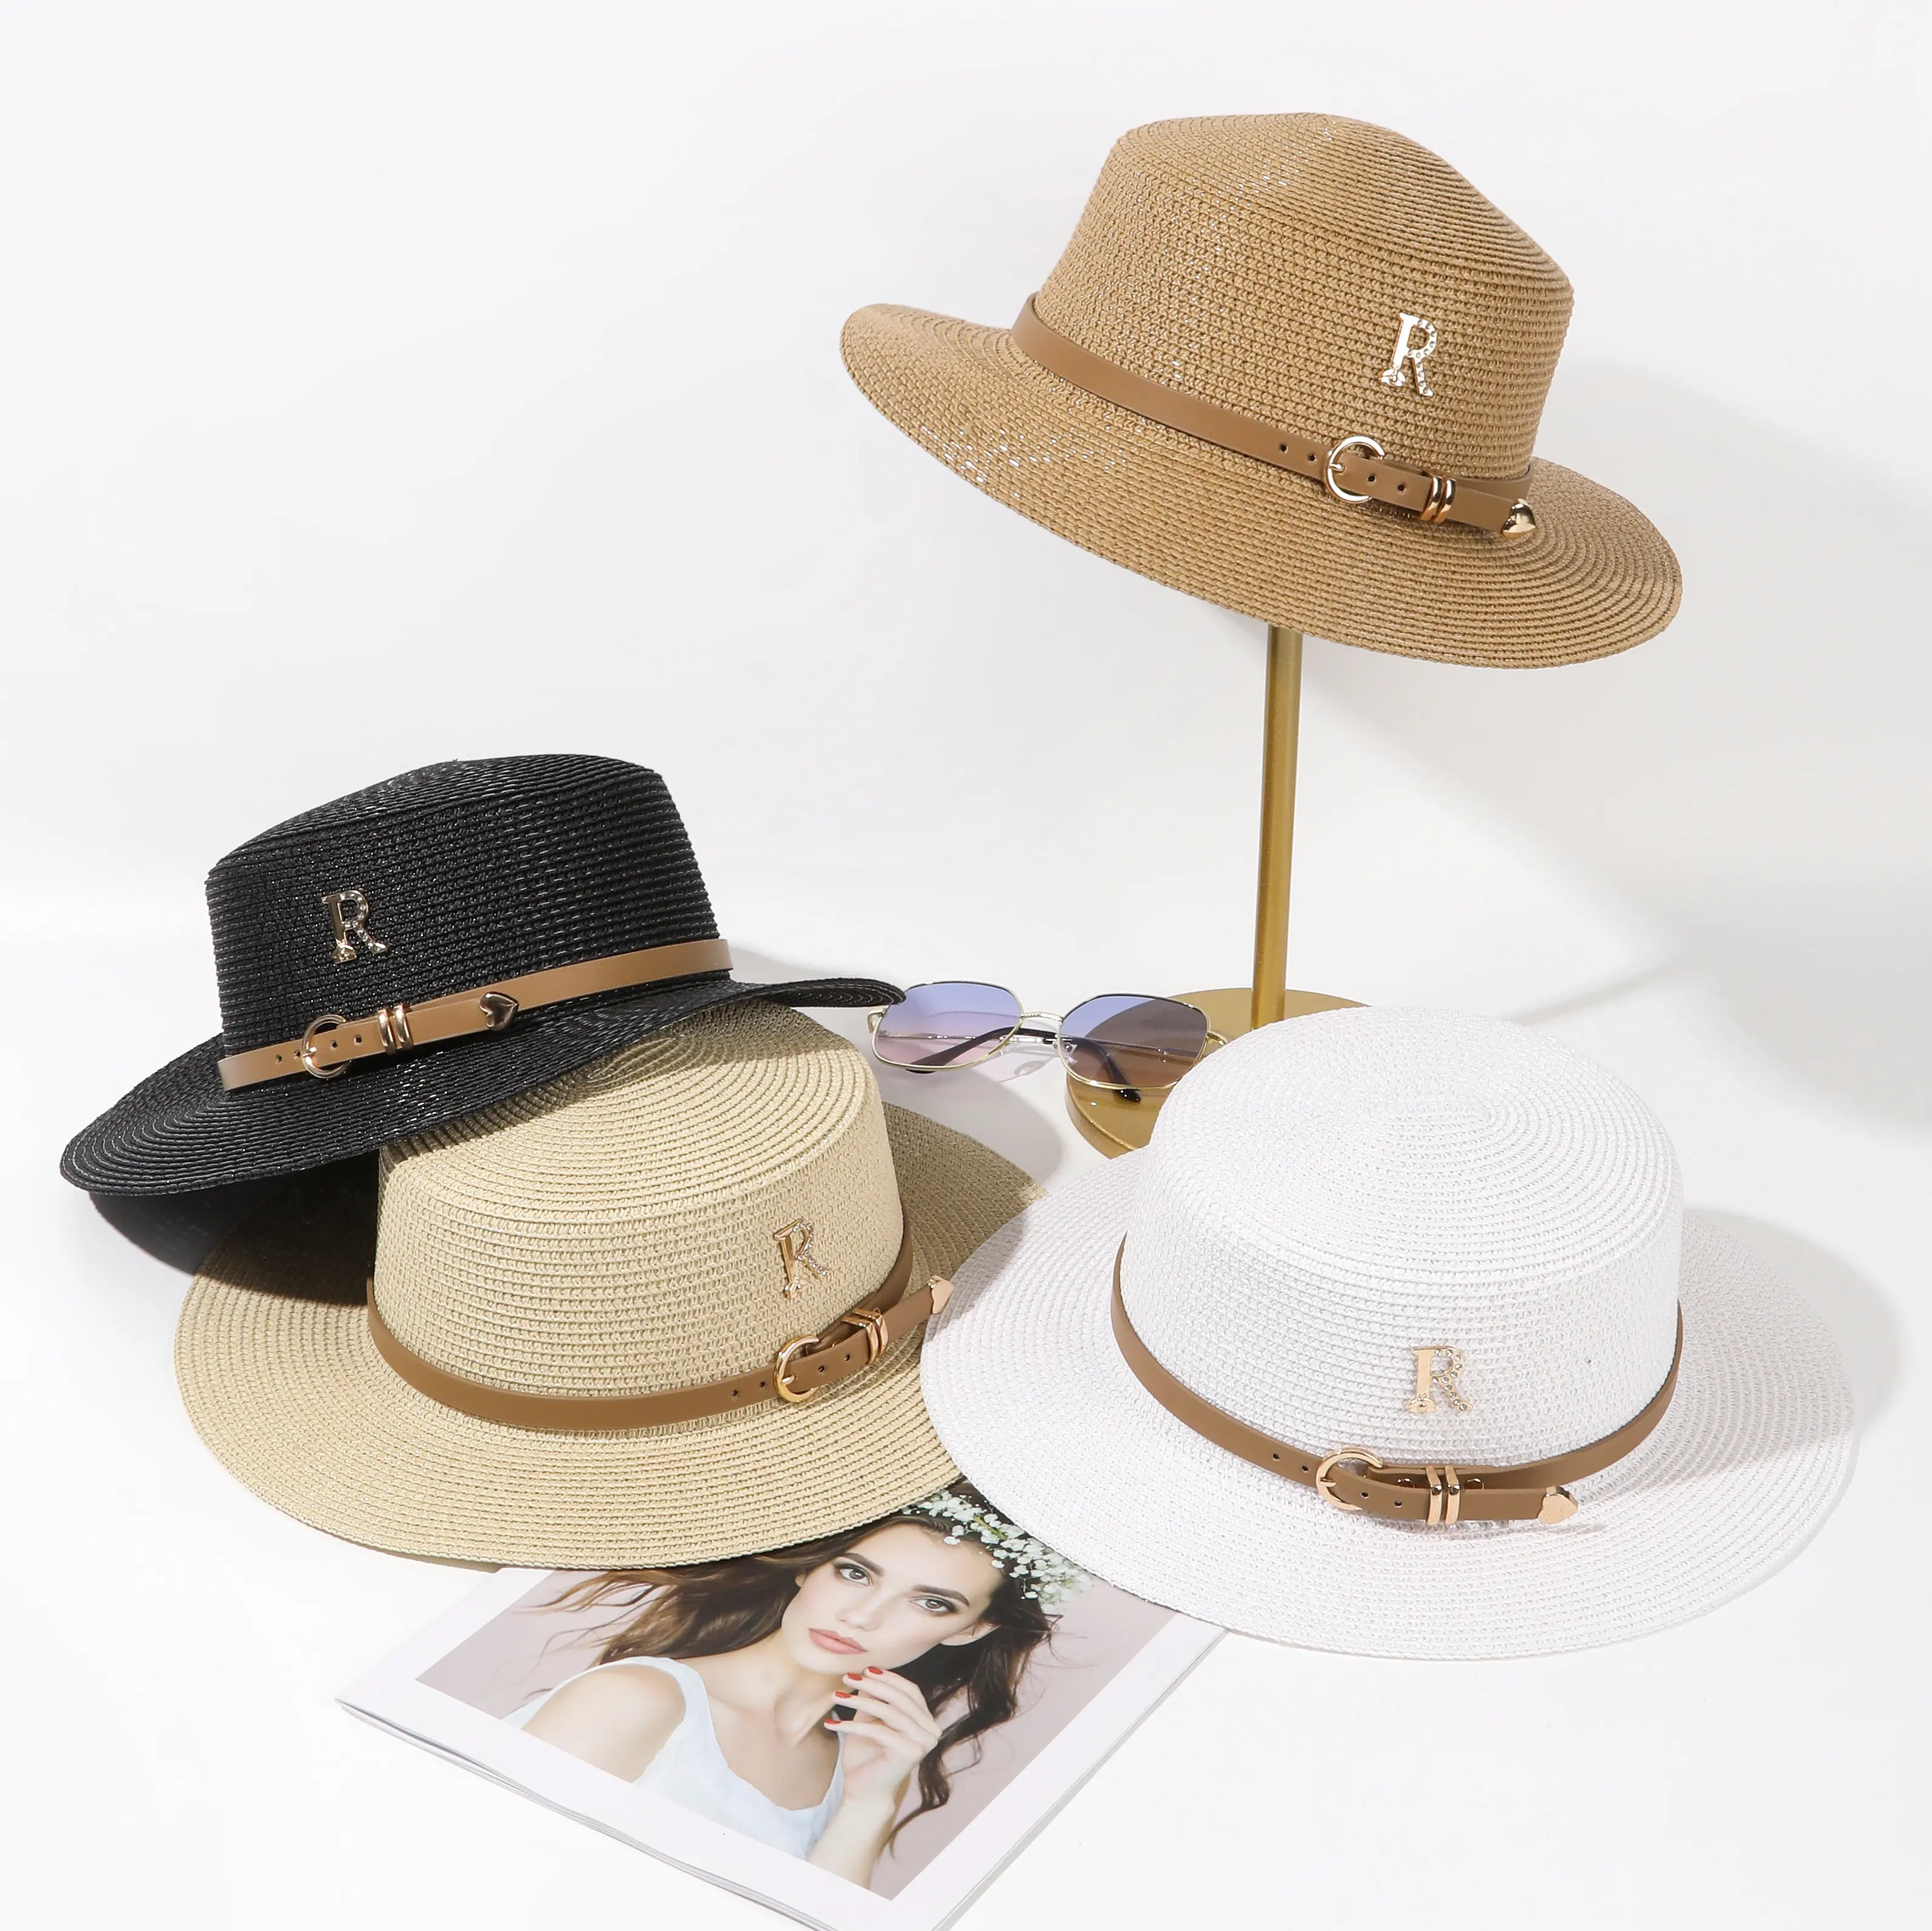 Toptan moda lüks yazlık hasır şapka 50 kutu açık plaj güneşlik düz üst kadın saman kağıt hasır şapkalar ile bir şapka